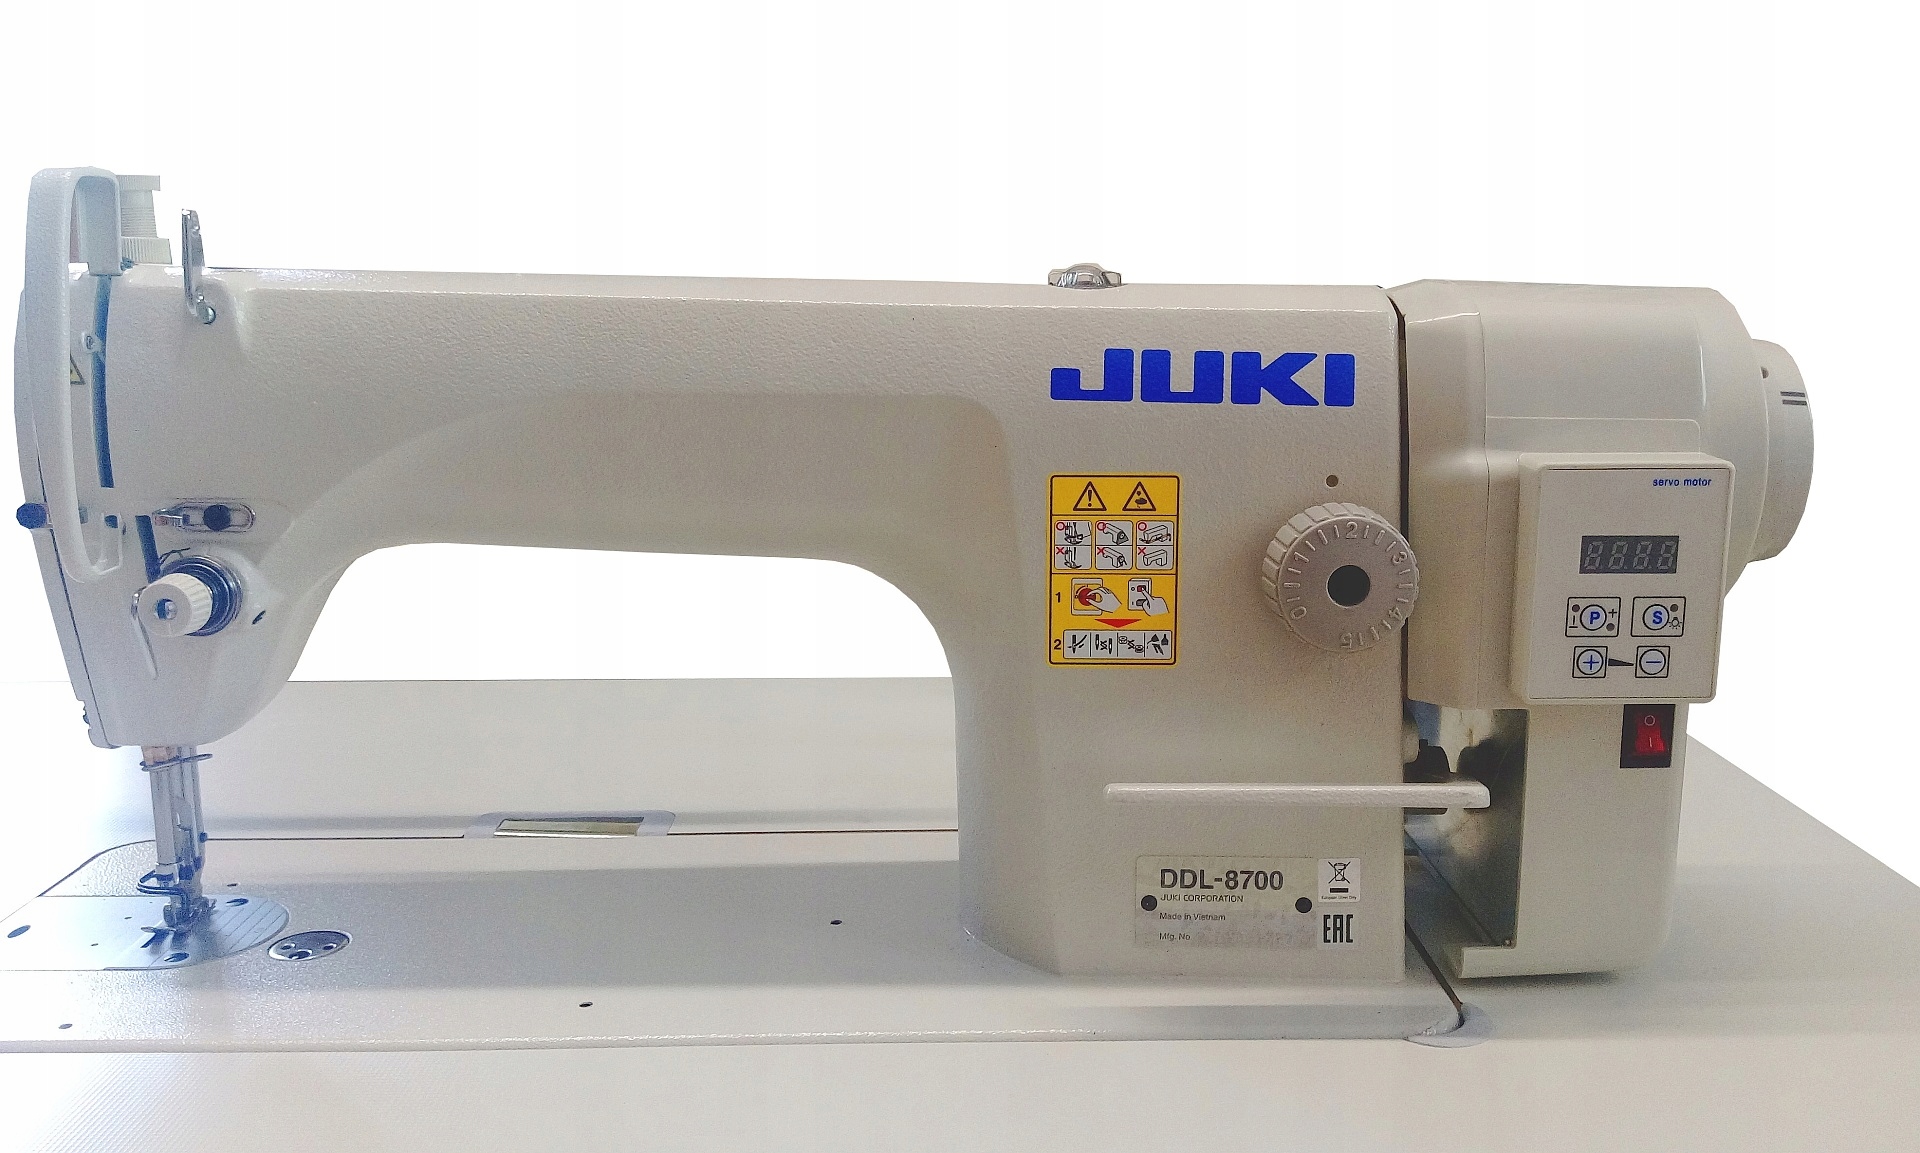 Купить швейную машинку juki. Juki DDL-8700. Джуки ДДЛ 8700. Швейная машина Juki 8700. Промышленная швейная машинка Juki DDL-8700.